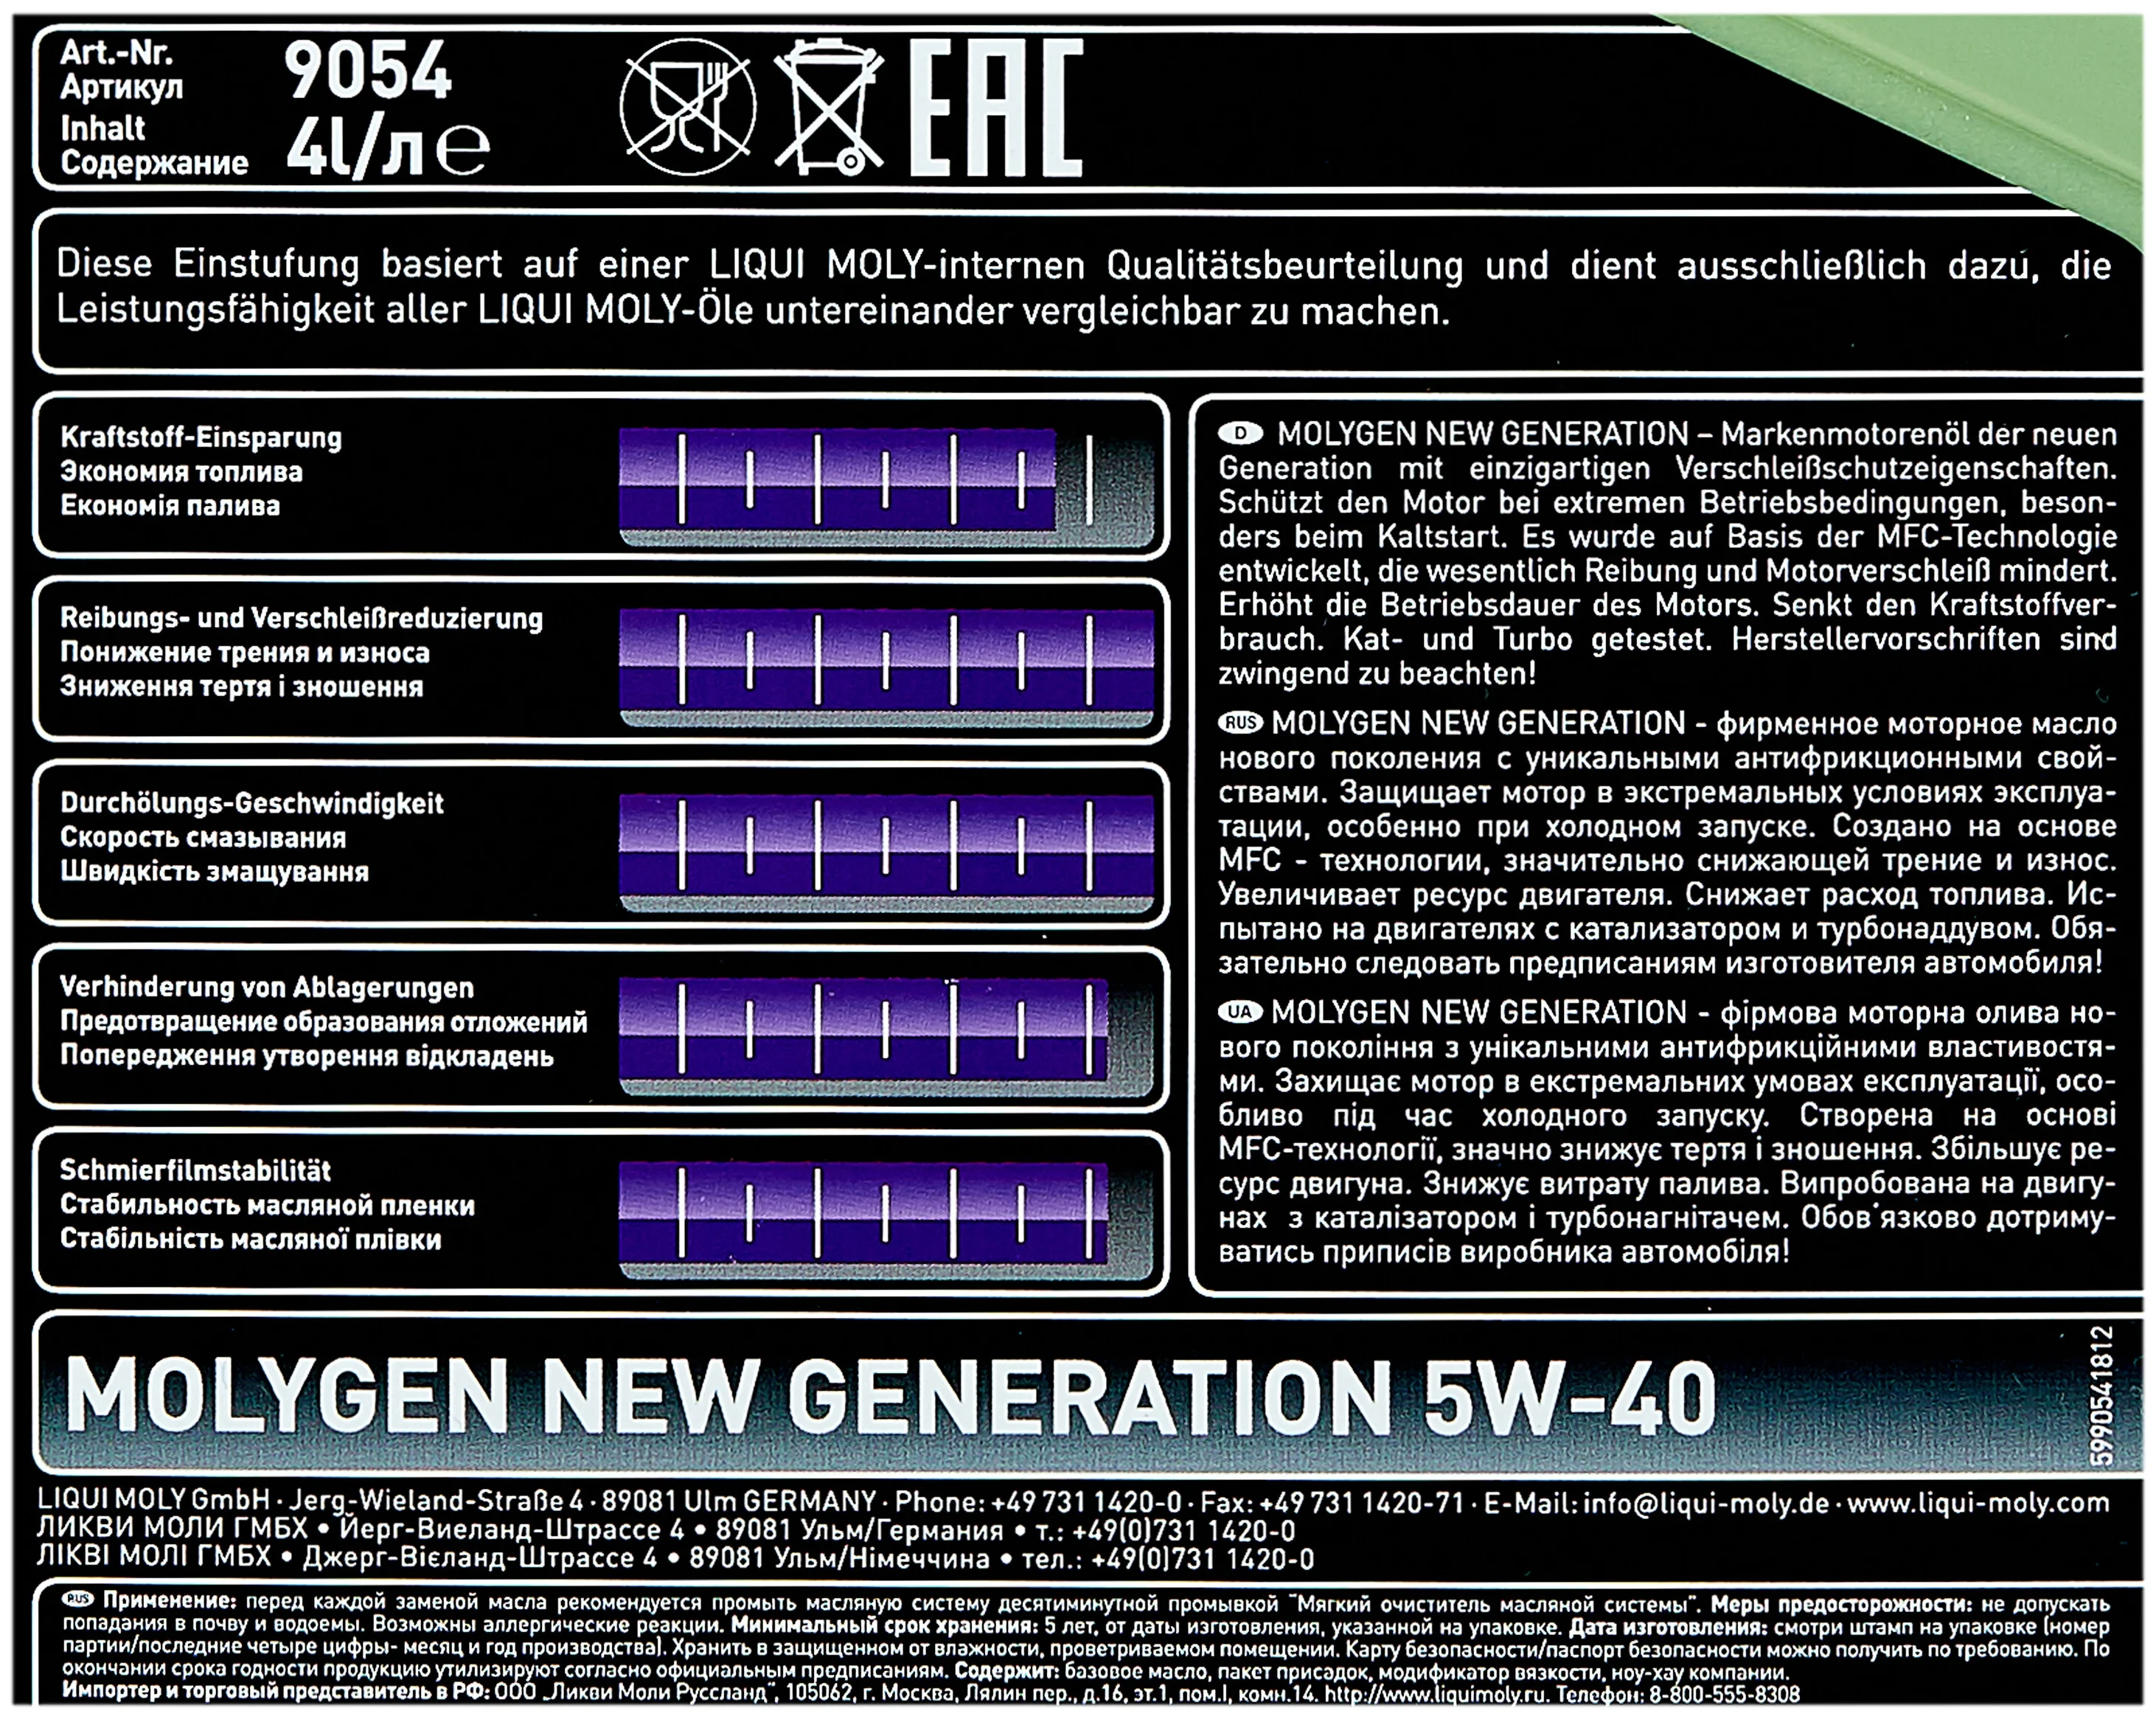 LIQUI MOLY Molygen New Generation 5W-40 - класс ACEA A3/В4